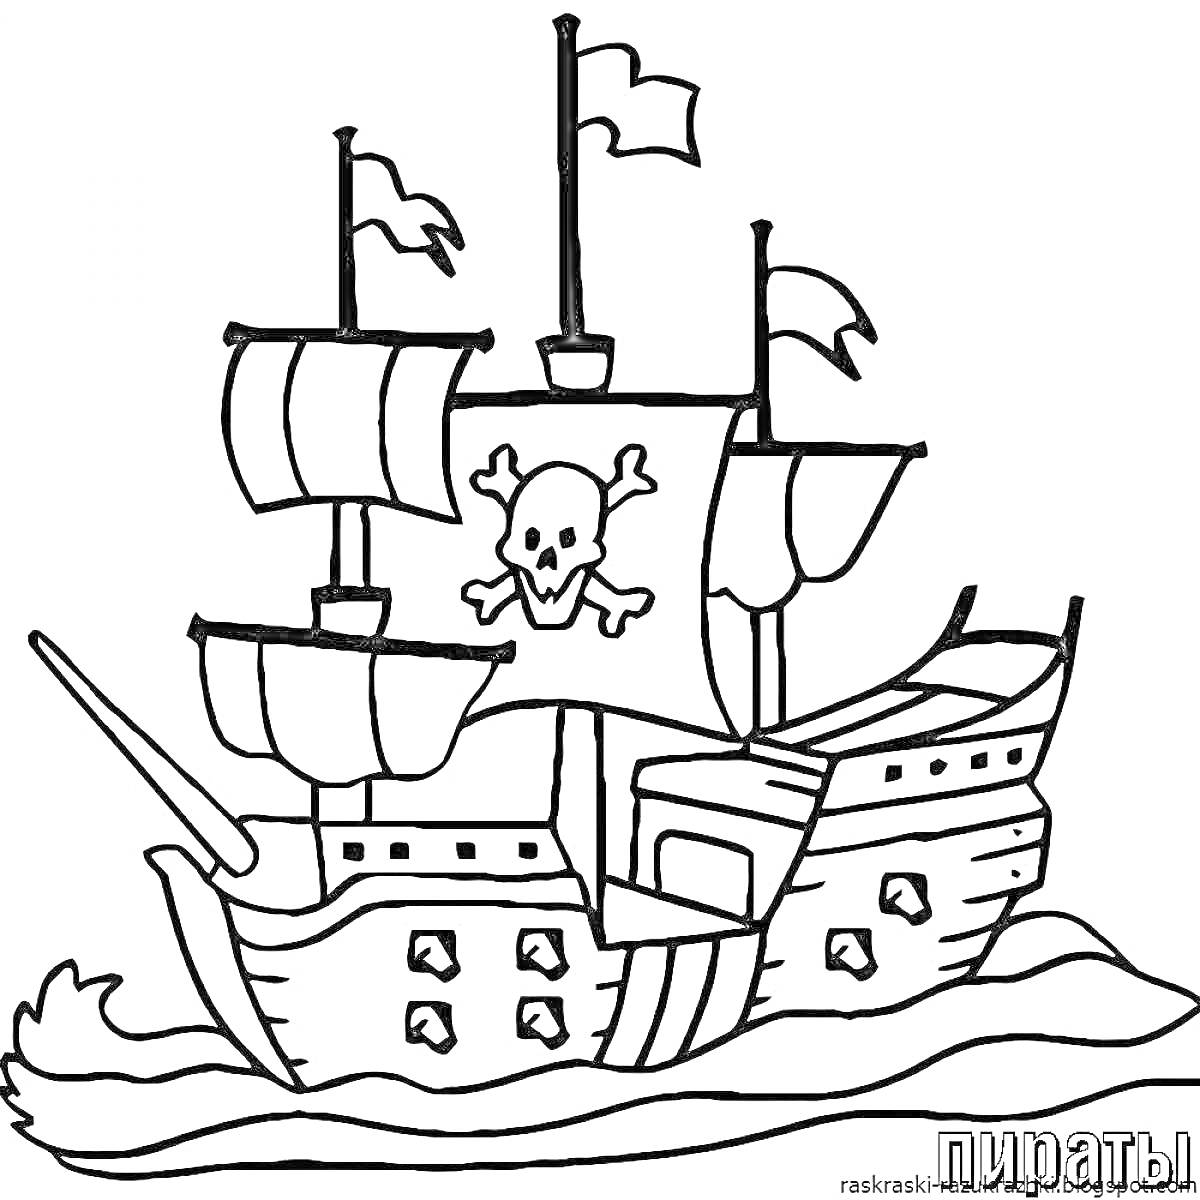 Раскраска Пиратский корабль с парусами, флагами с черепом, идущий по волнам